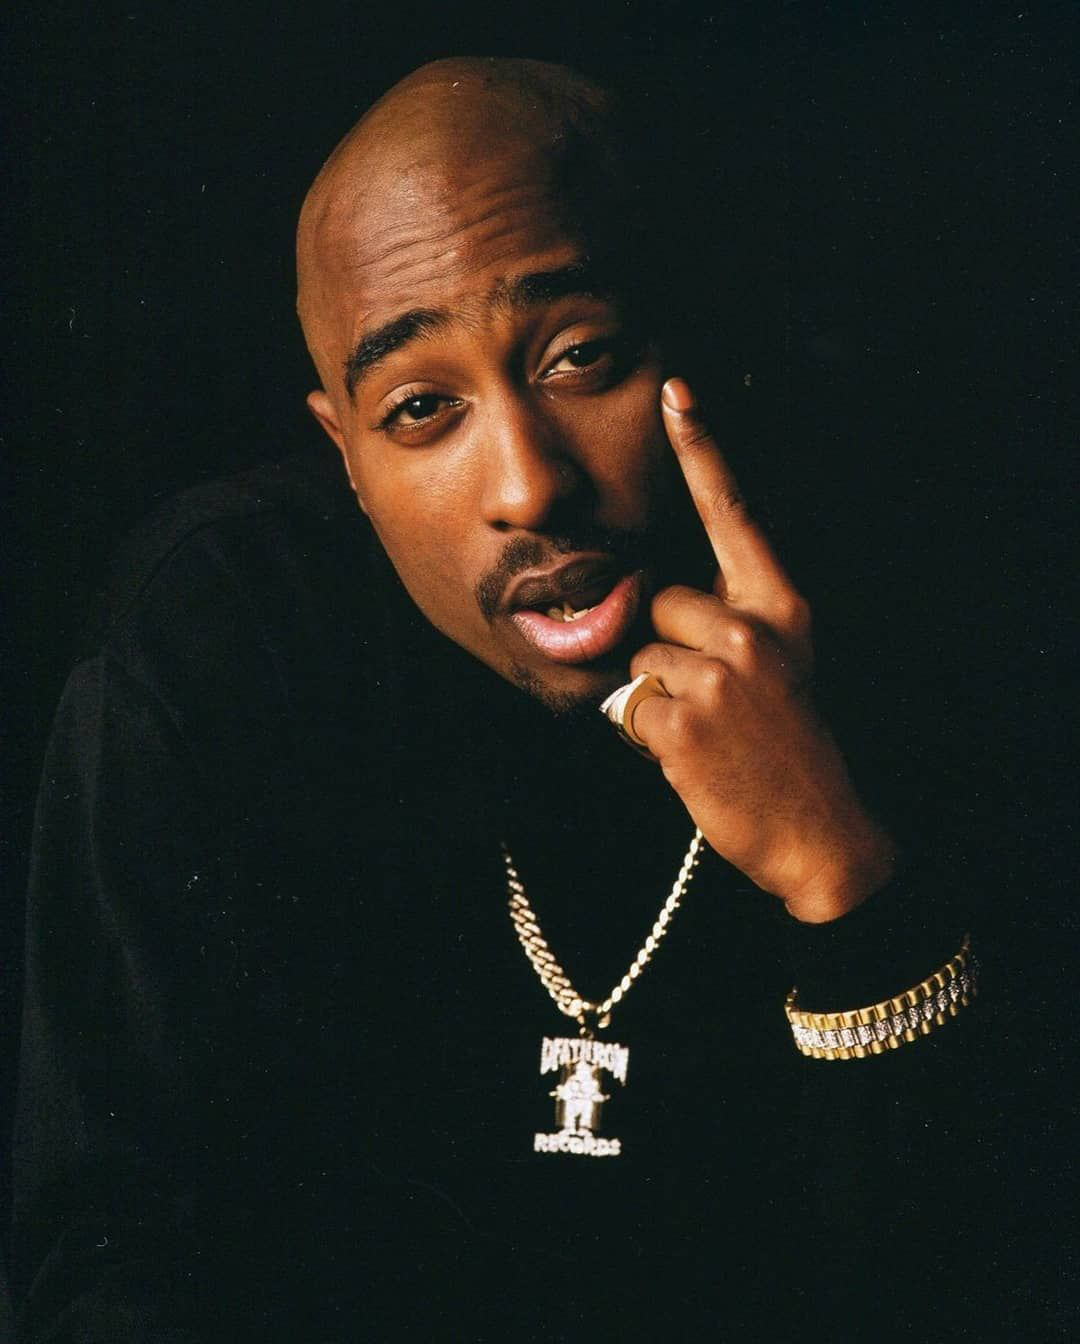 Tupac Shakur : l’enquête sur l’assassinat du rappeur relancée 27 ans après les faits ?